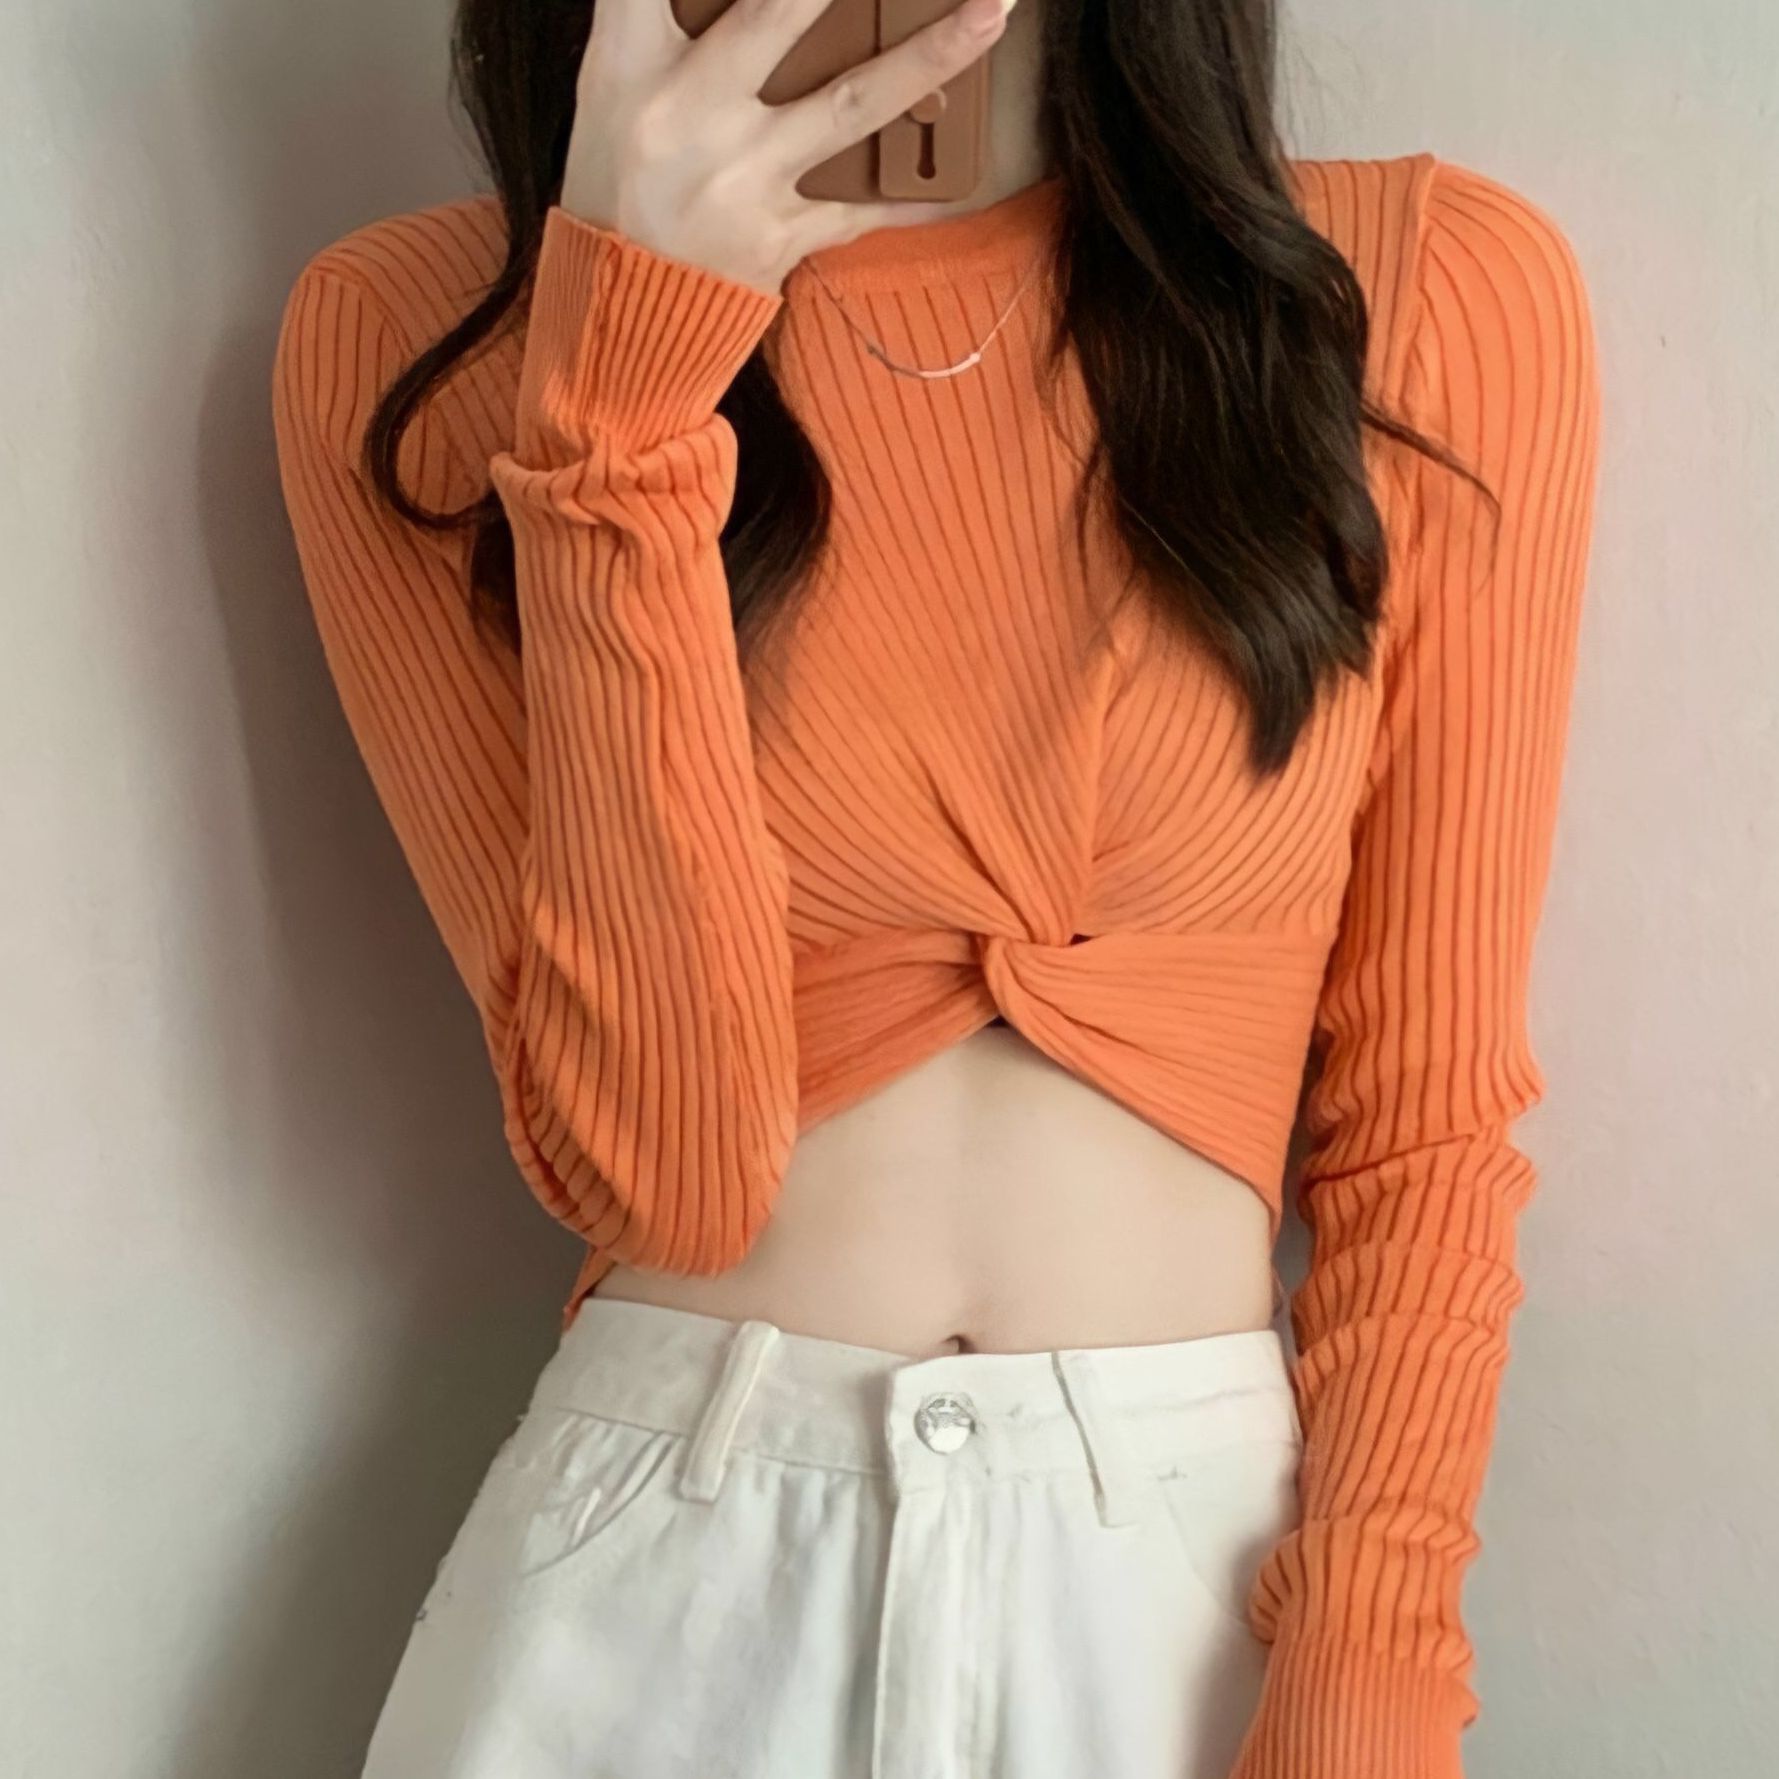 Áo croptop nữ thun gân GONGZU phối tay dài xoắn chéo bụng ôm body từ 48kg màu đen, hồng, xanh, cam, trắng